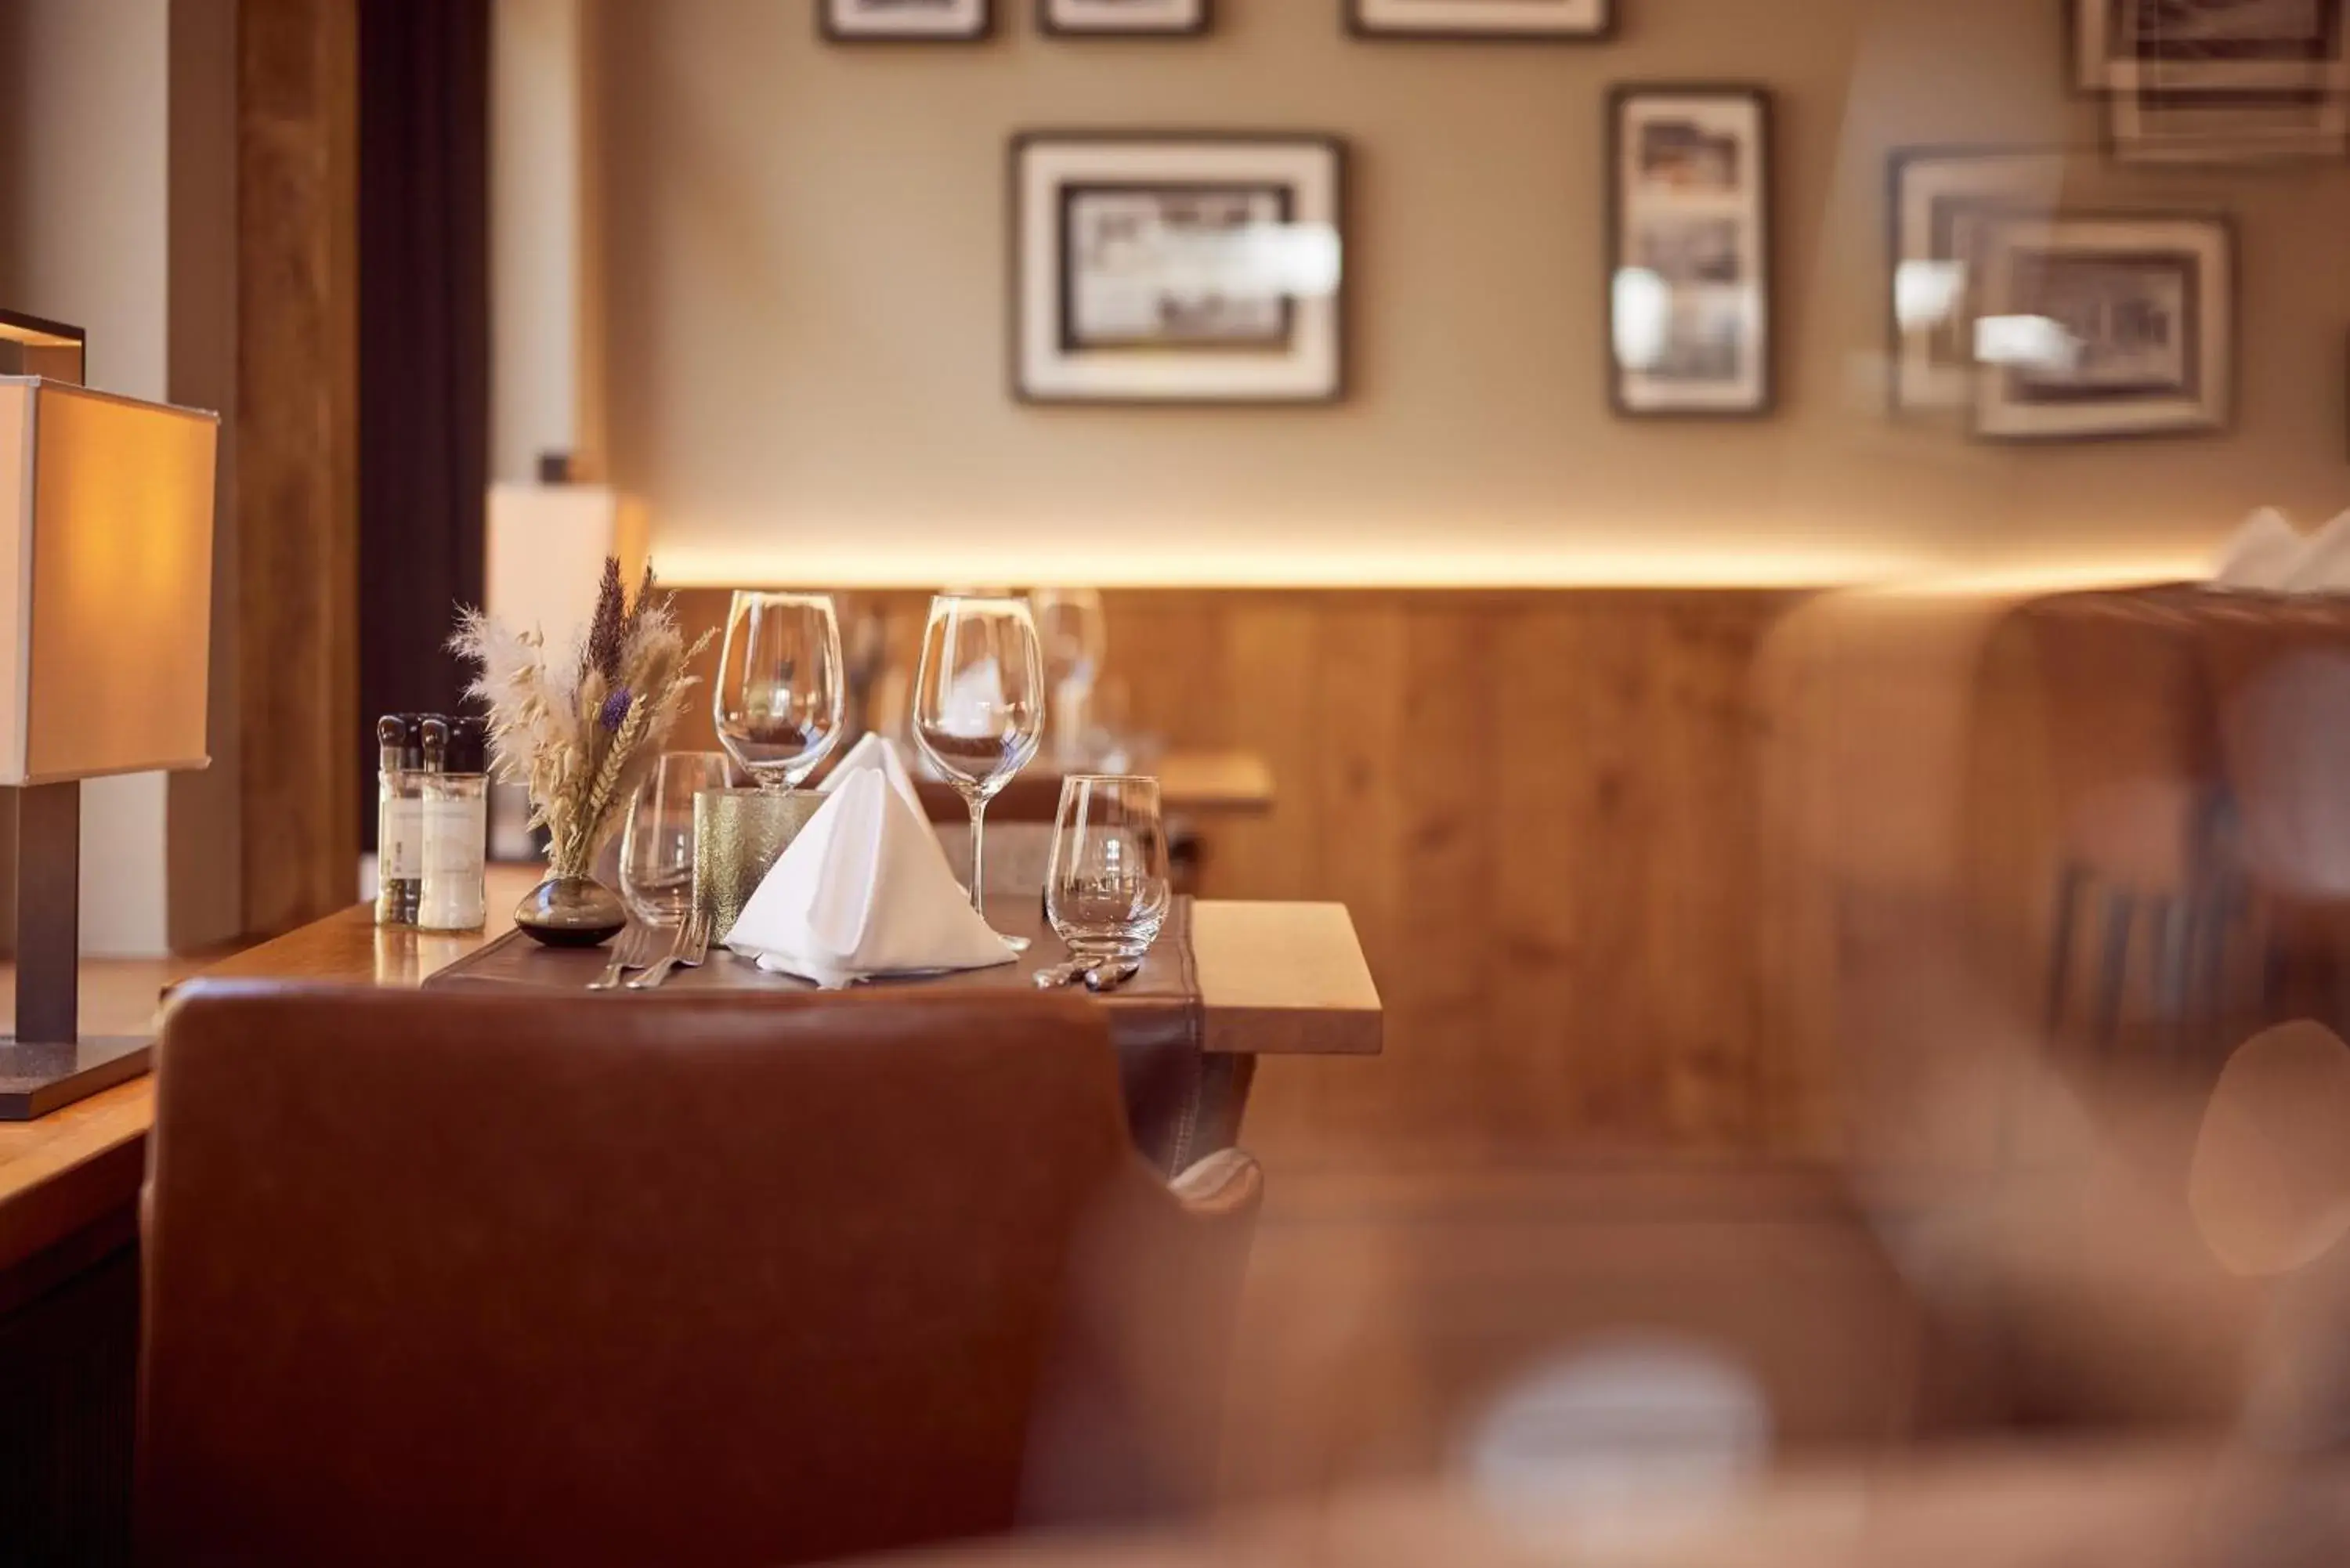 Restaurant/places to eat, Lobby/Reception in Van der Valk Hotel Dennenhof